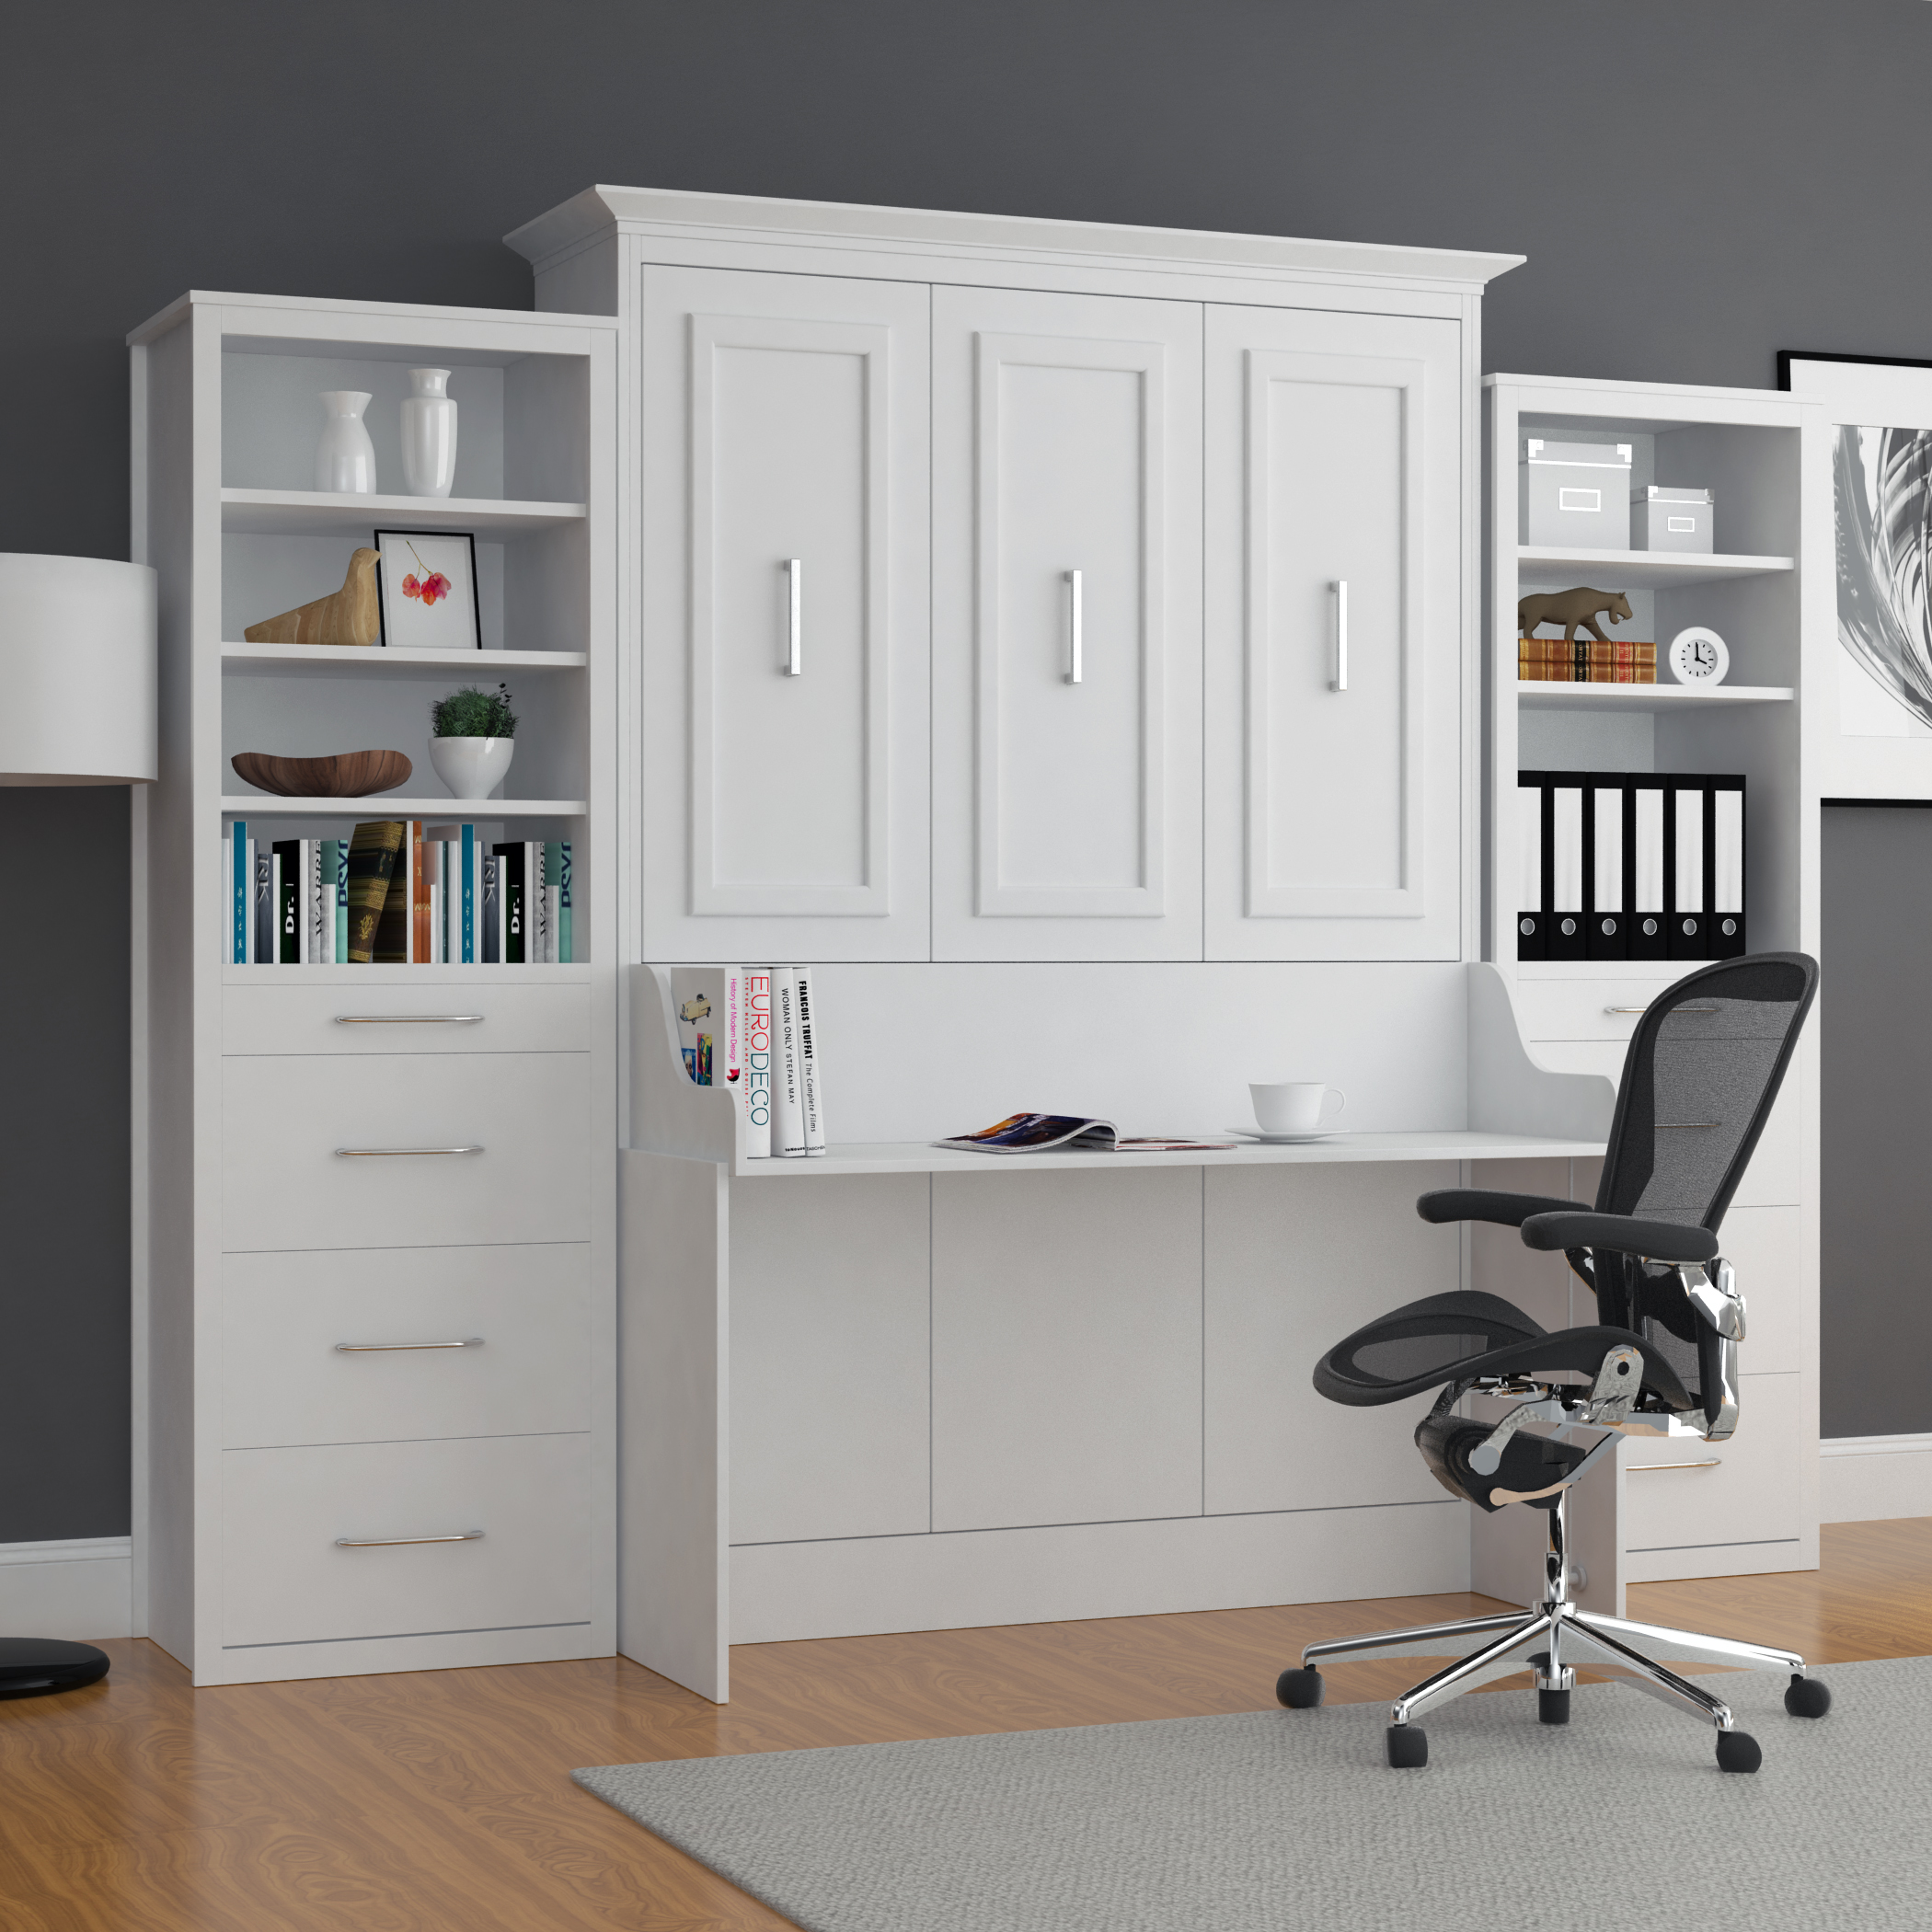 Alegra White Diy Murphy Desk Bed Queen, How To Build A Murphy Bed Desktop